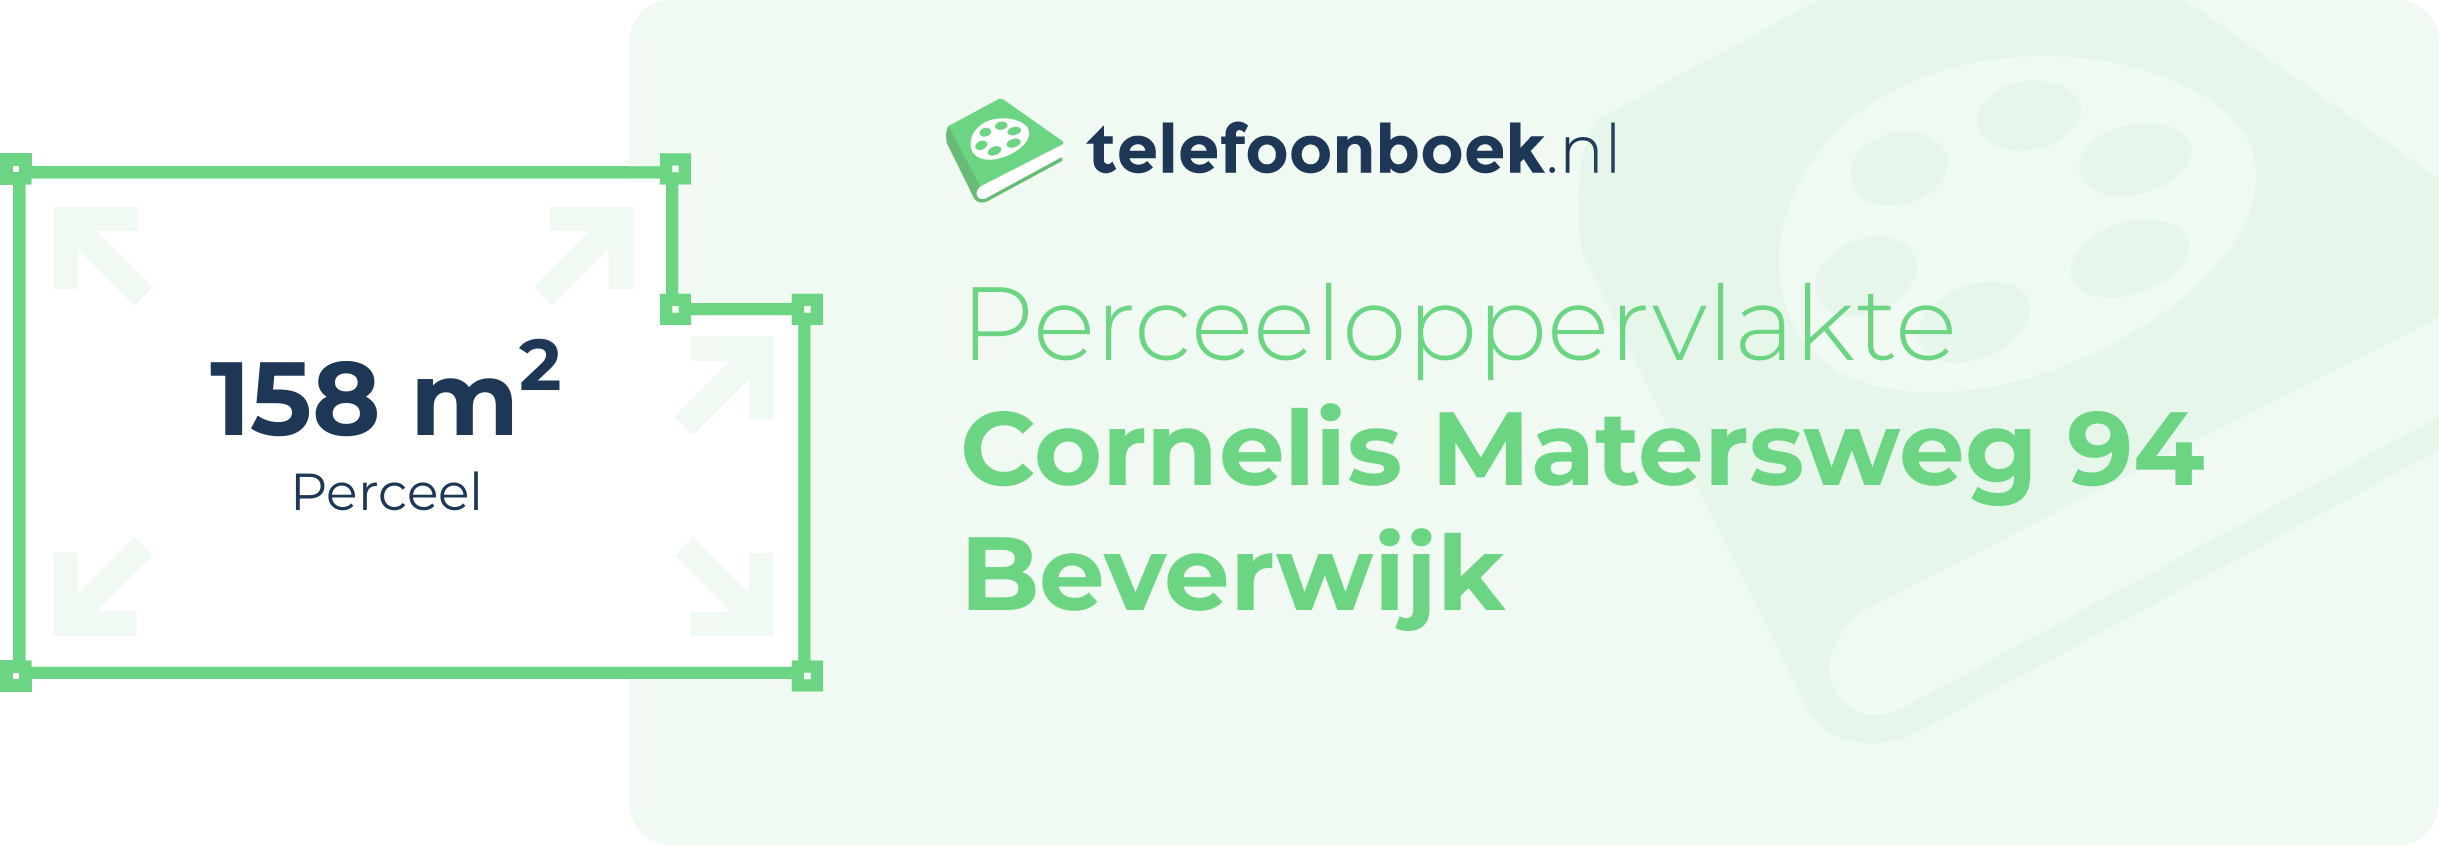 Perceeloppervlakte Cornelis Matersweg 94 Beverwijk